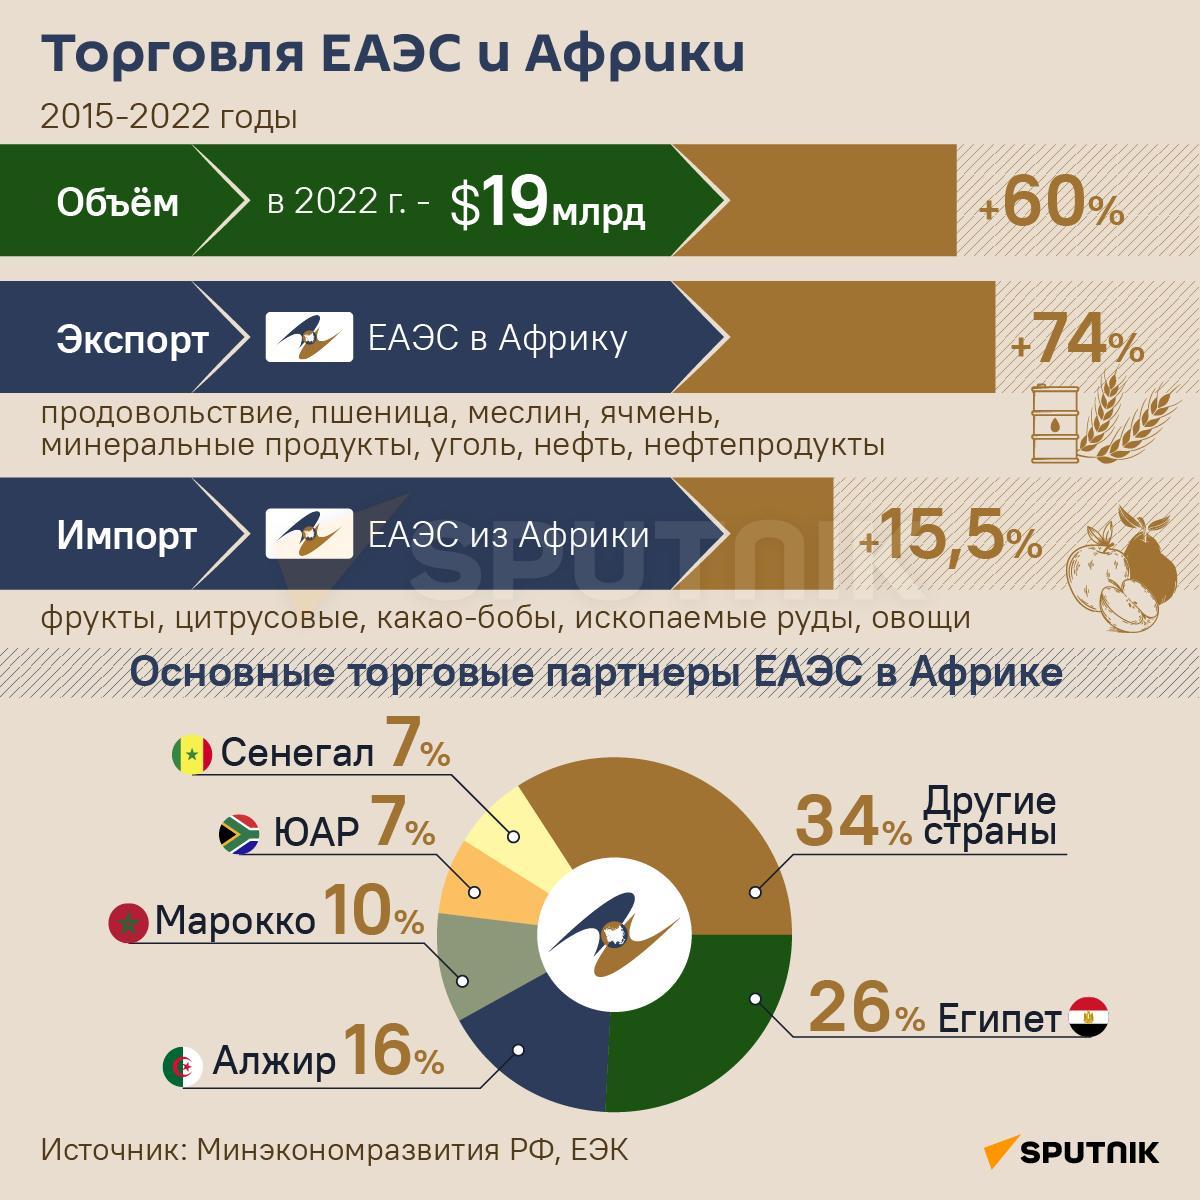 Торговля ЕАЭС и Африки в 2015-2022 годах инфографика - Sputnik Узбекистан